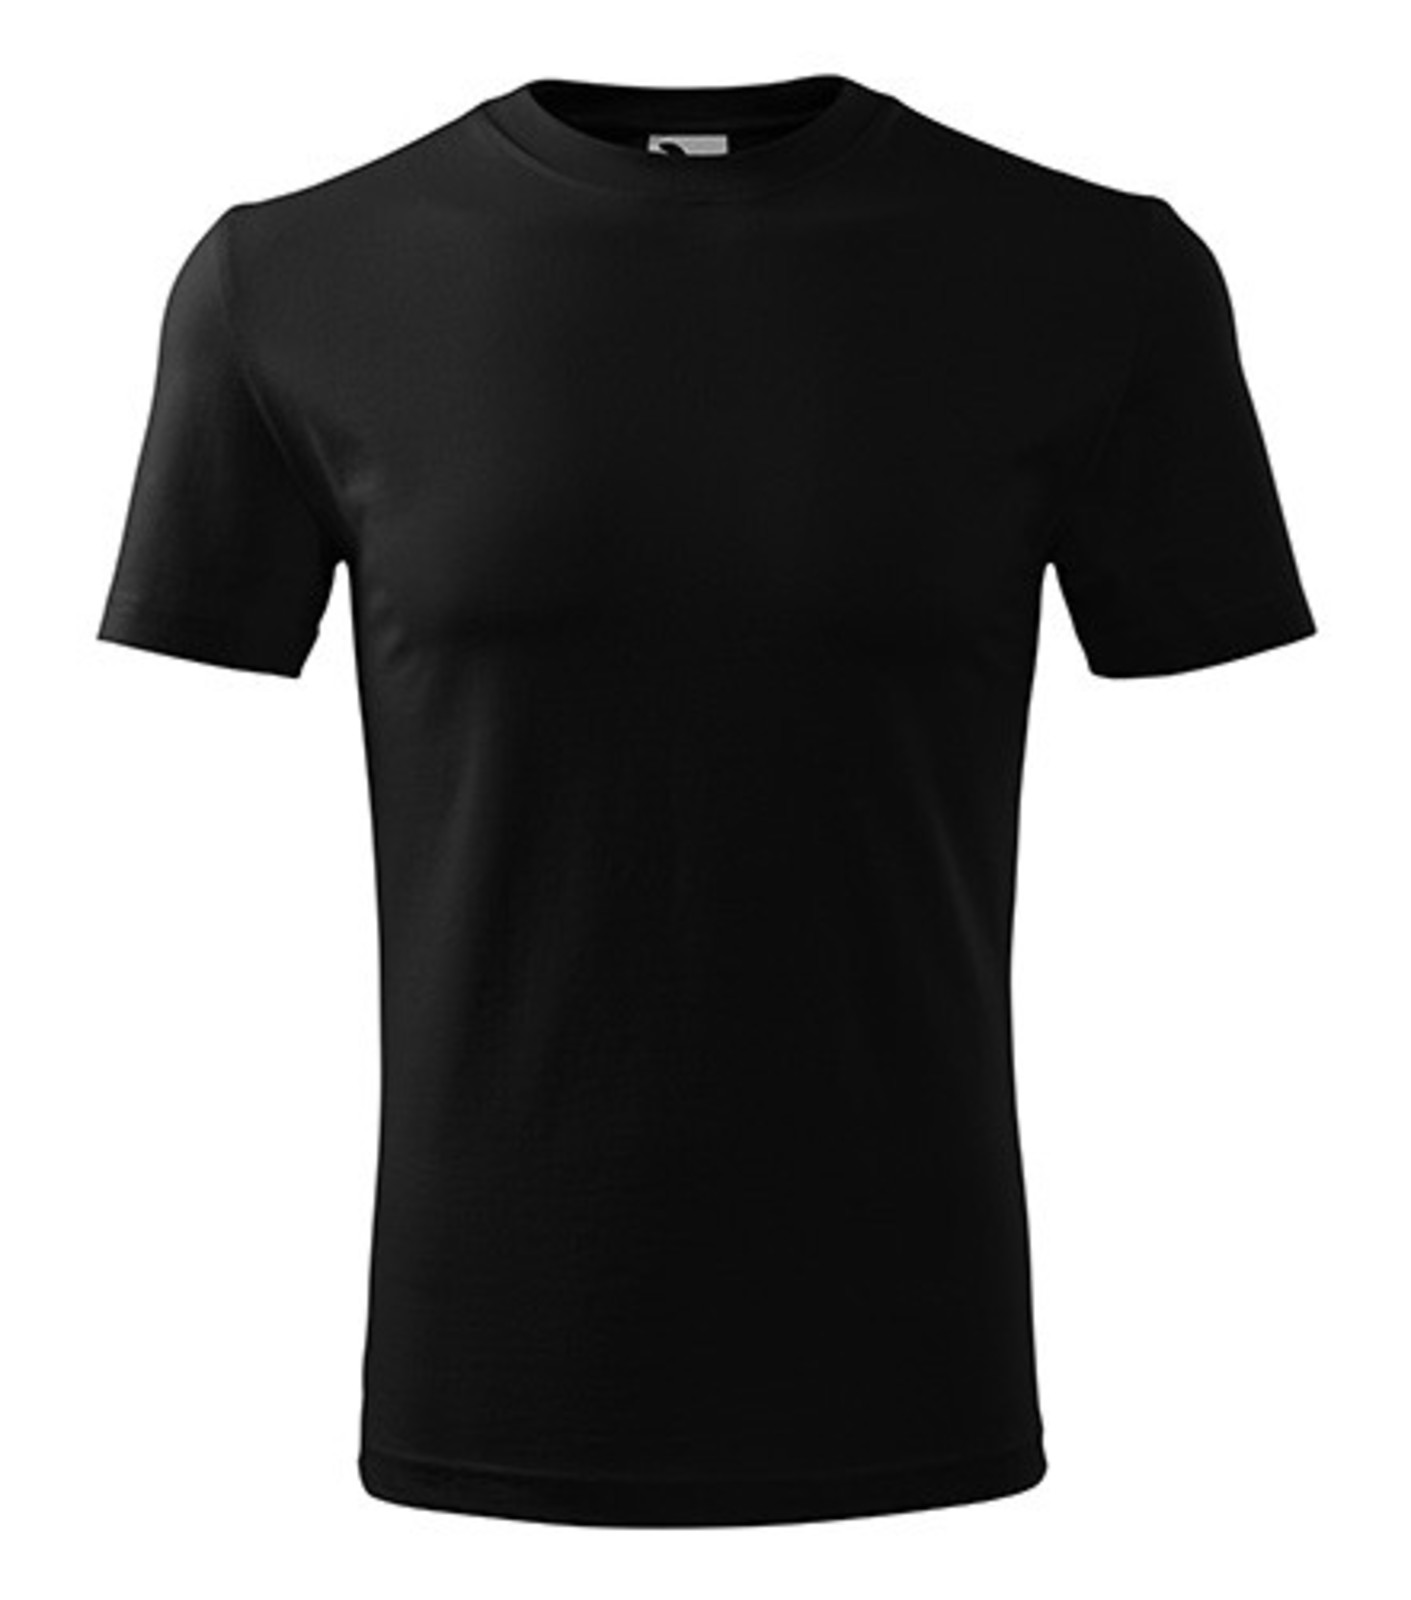 Pánske tričko Adler Classic New 132 - veľkosť: XXL, farba: čierna